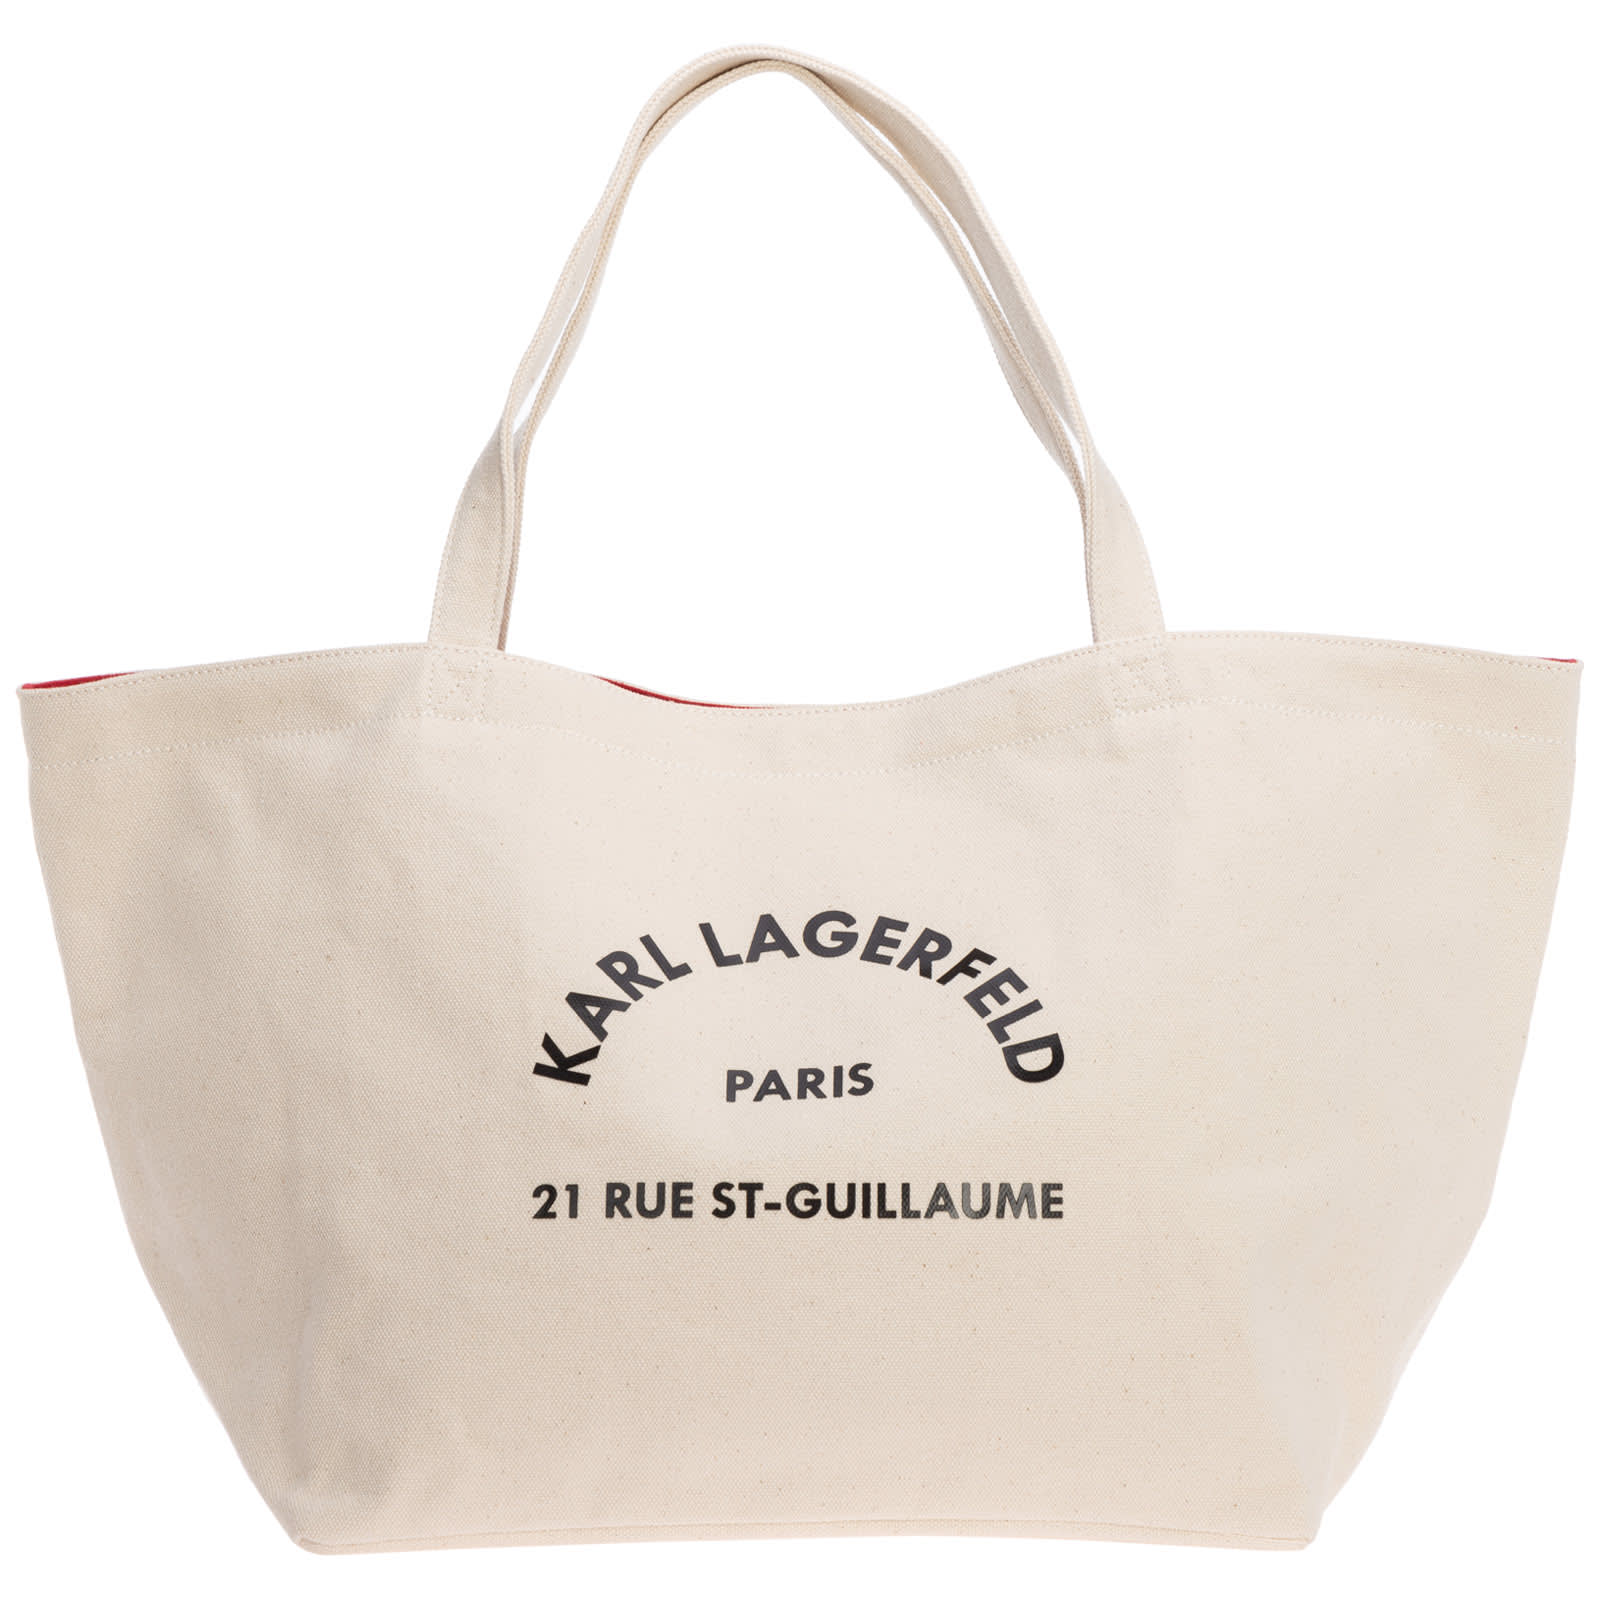 Karl Lagerfeld K/rue St Guillaume Tote Bag